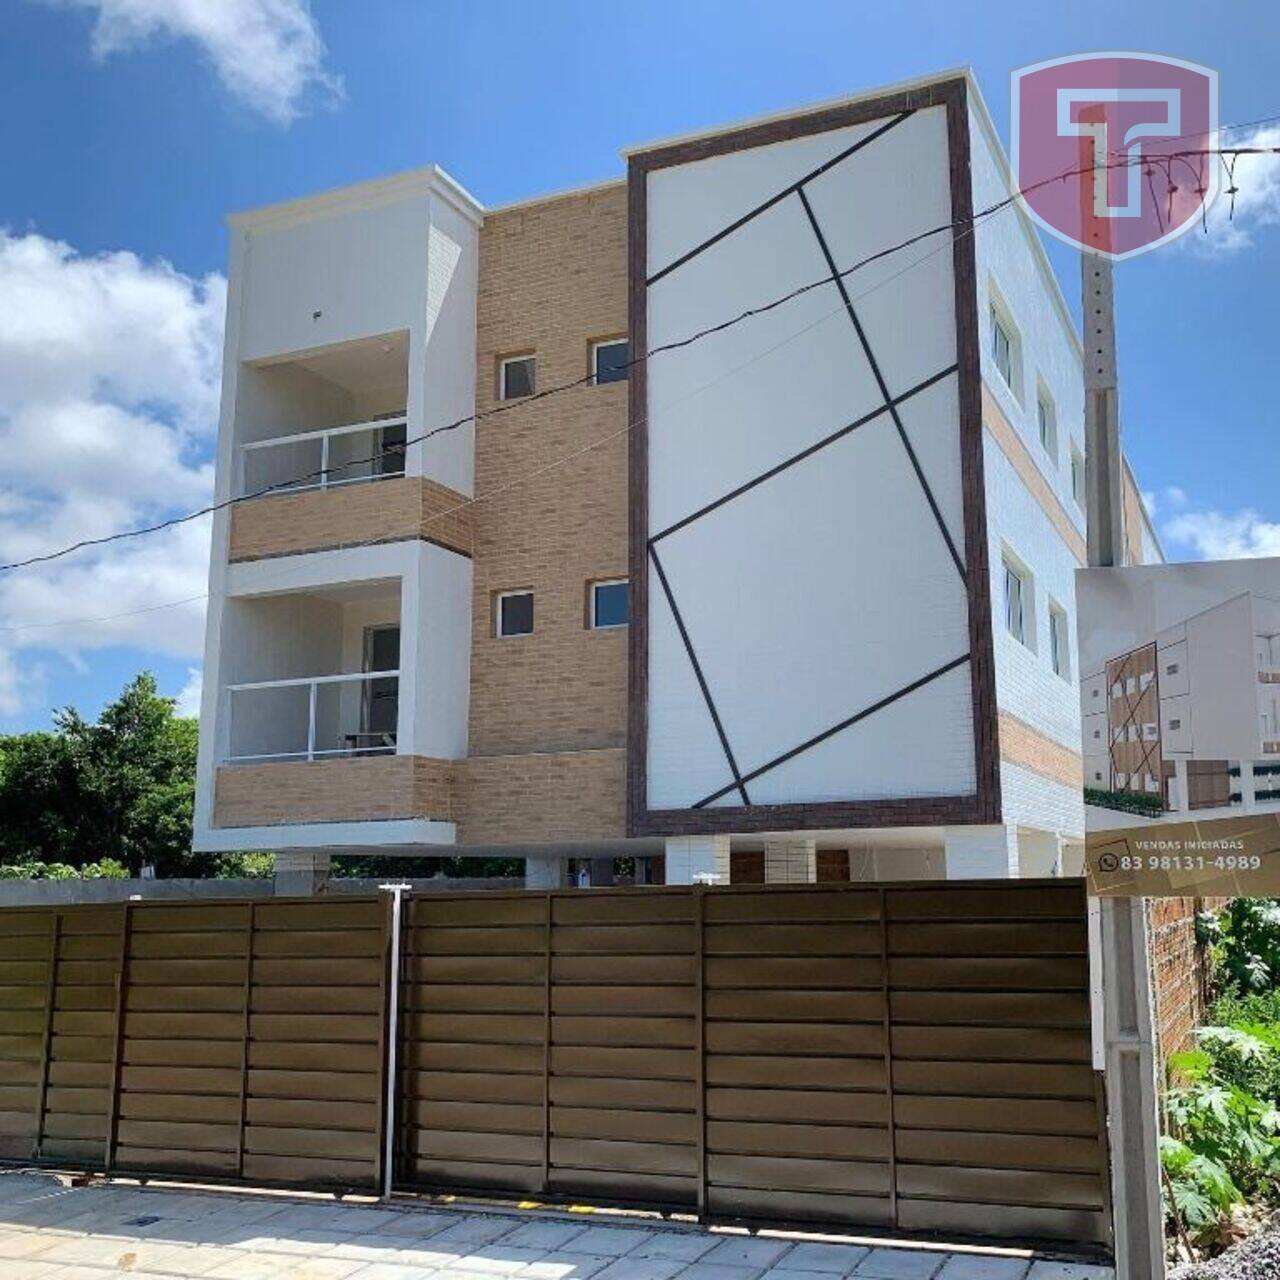 Vinícius Soares - Apartamento com 3 dormitórios à venda - Portal do Sol, João Pessoa/PB